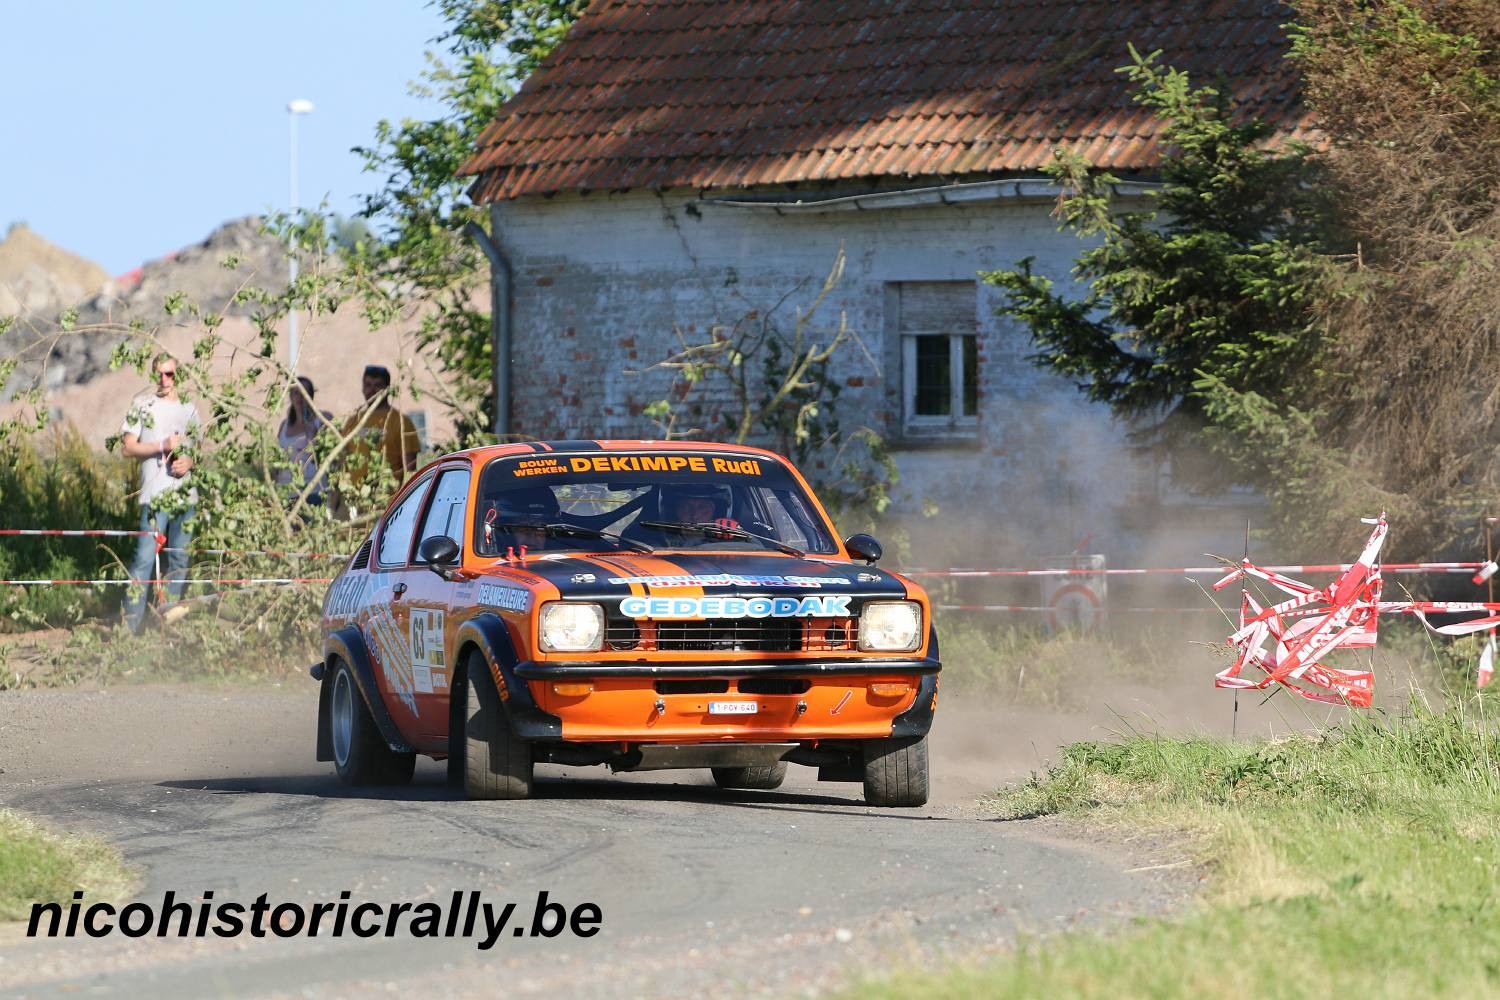 Wedstrijdverslag Rudi Dekimpe en Leroy Christophe in de Rally van Wervik.